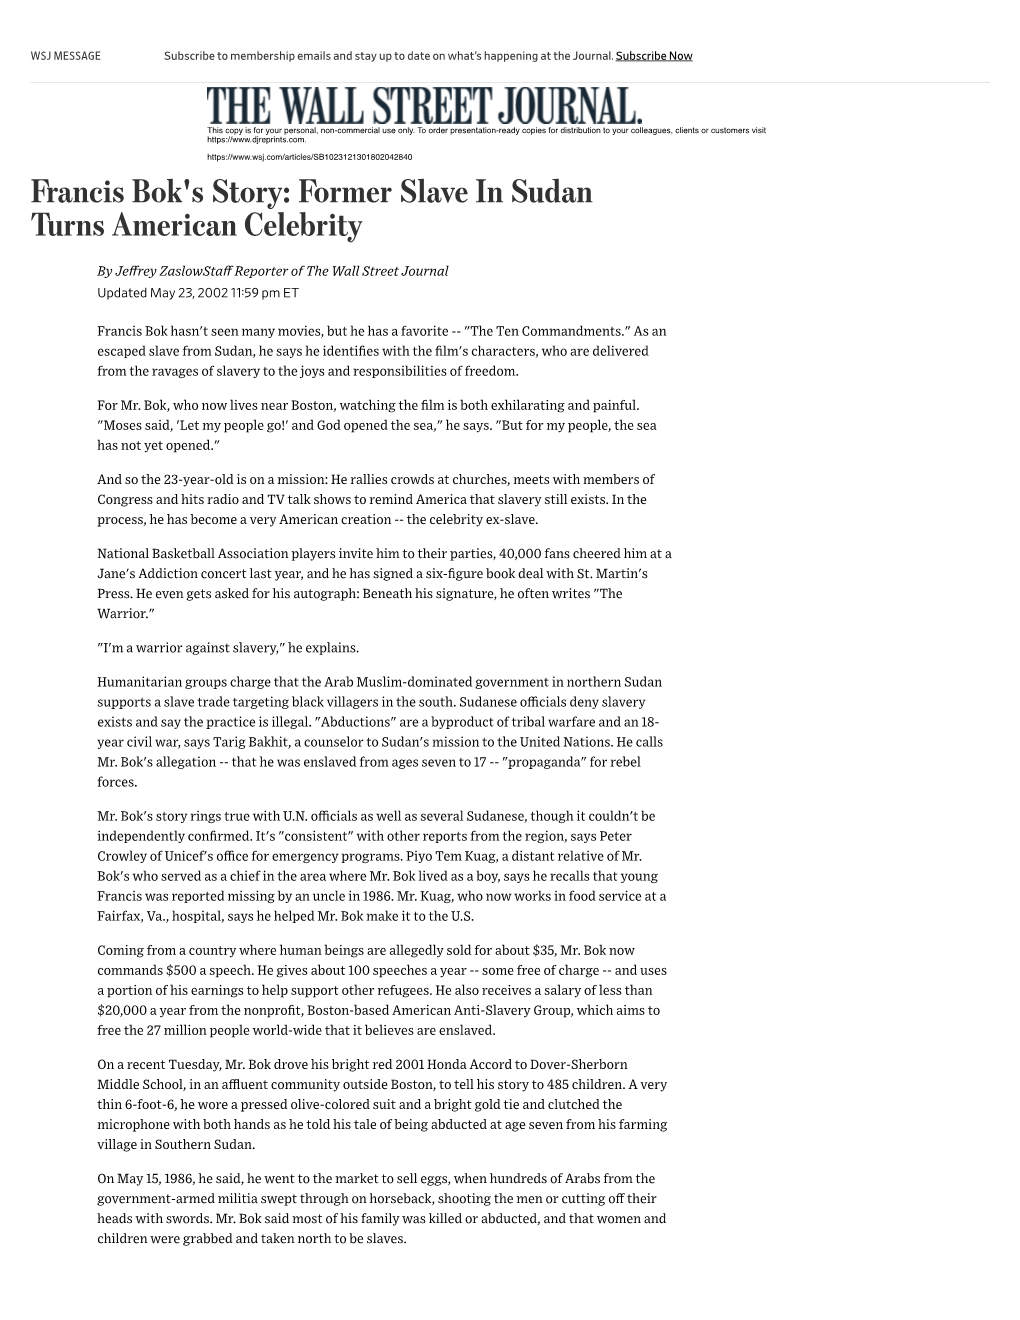 Francis Bok's Story: Former Slave in Sudan Turns American Celebrity